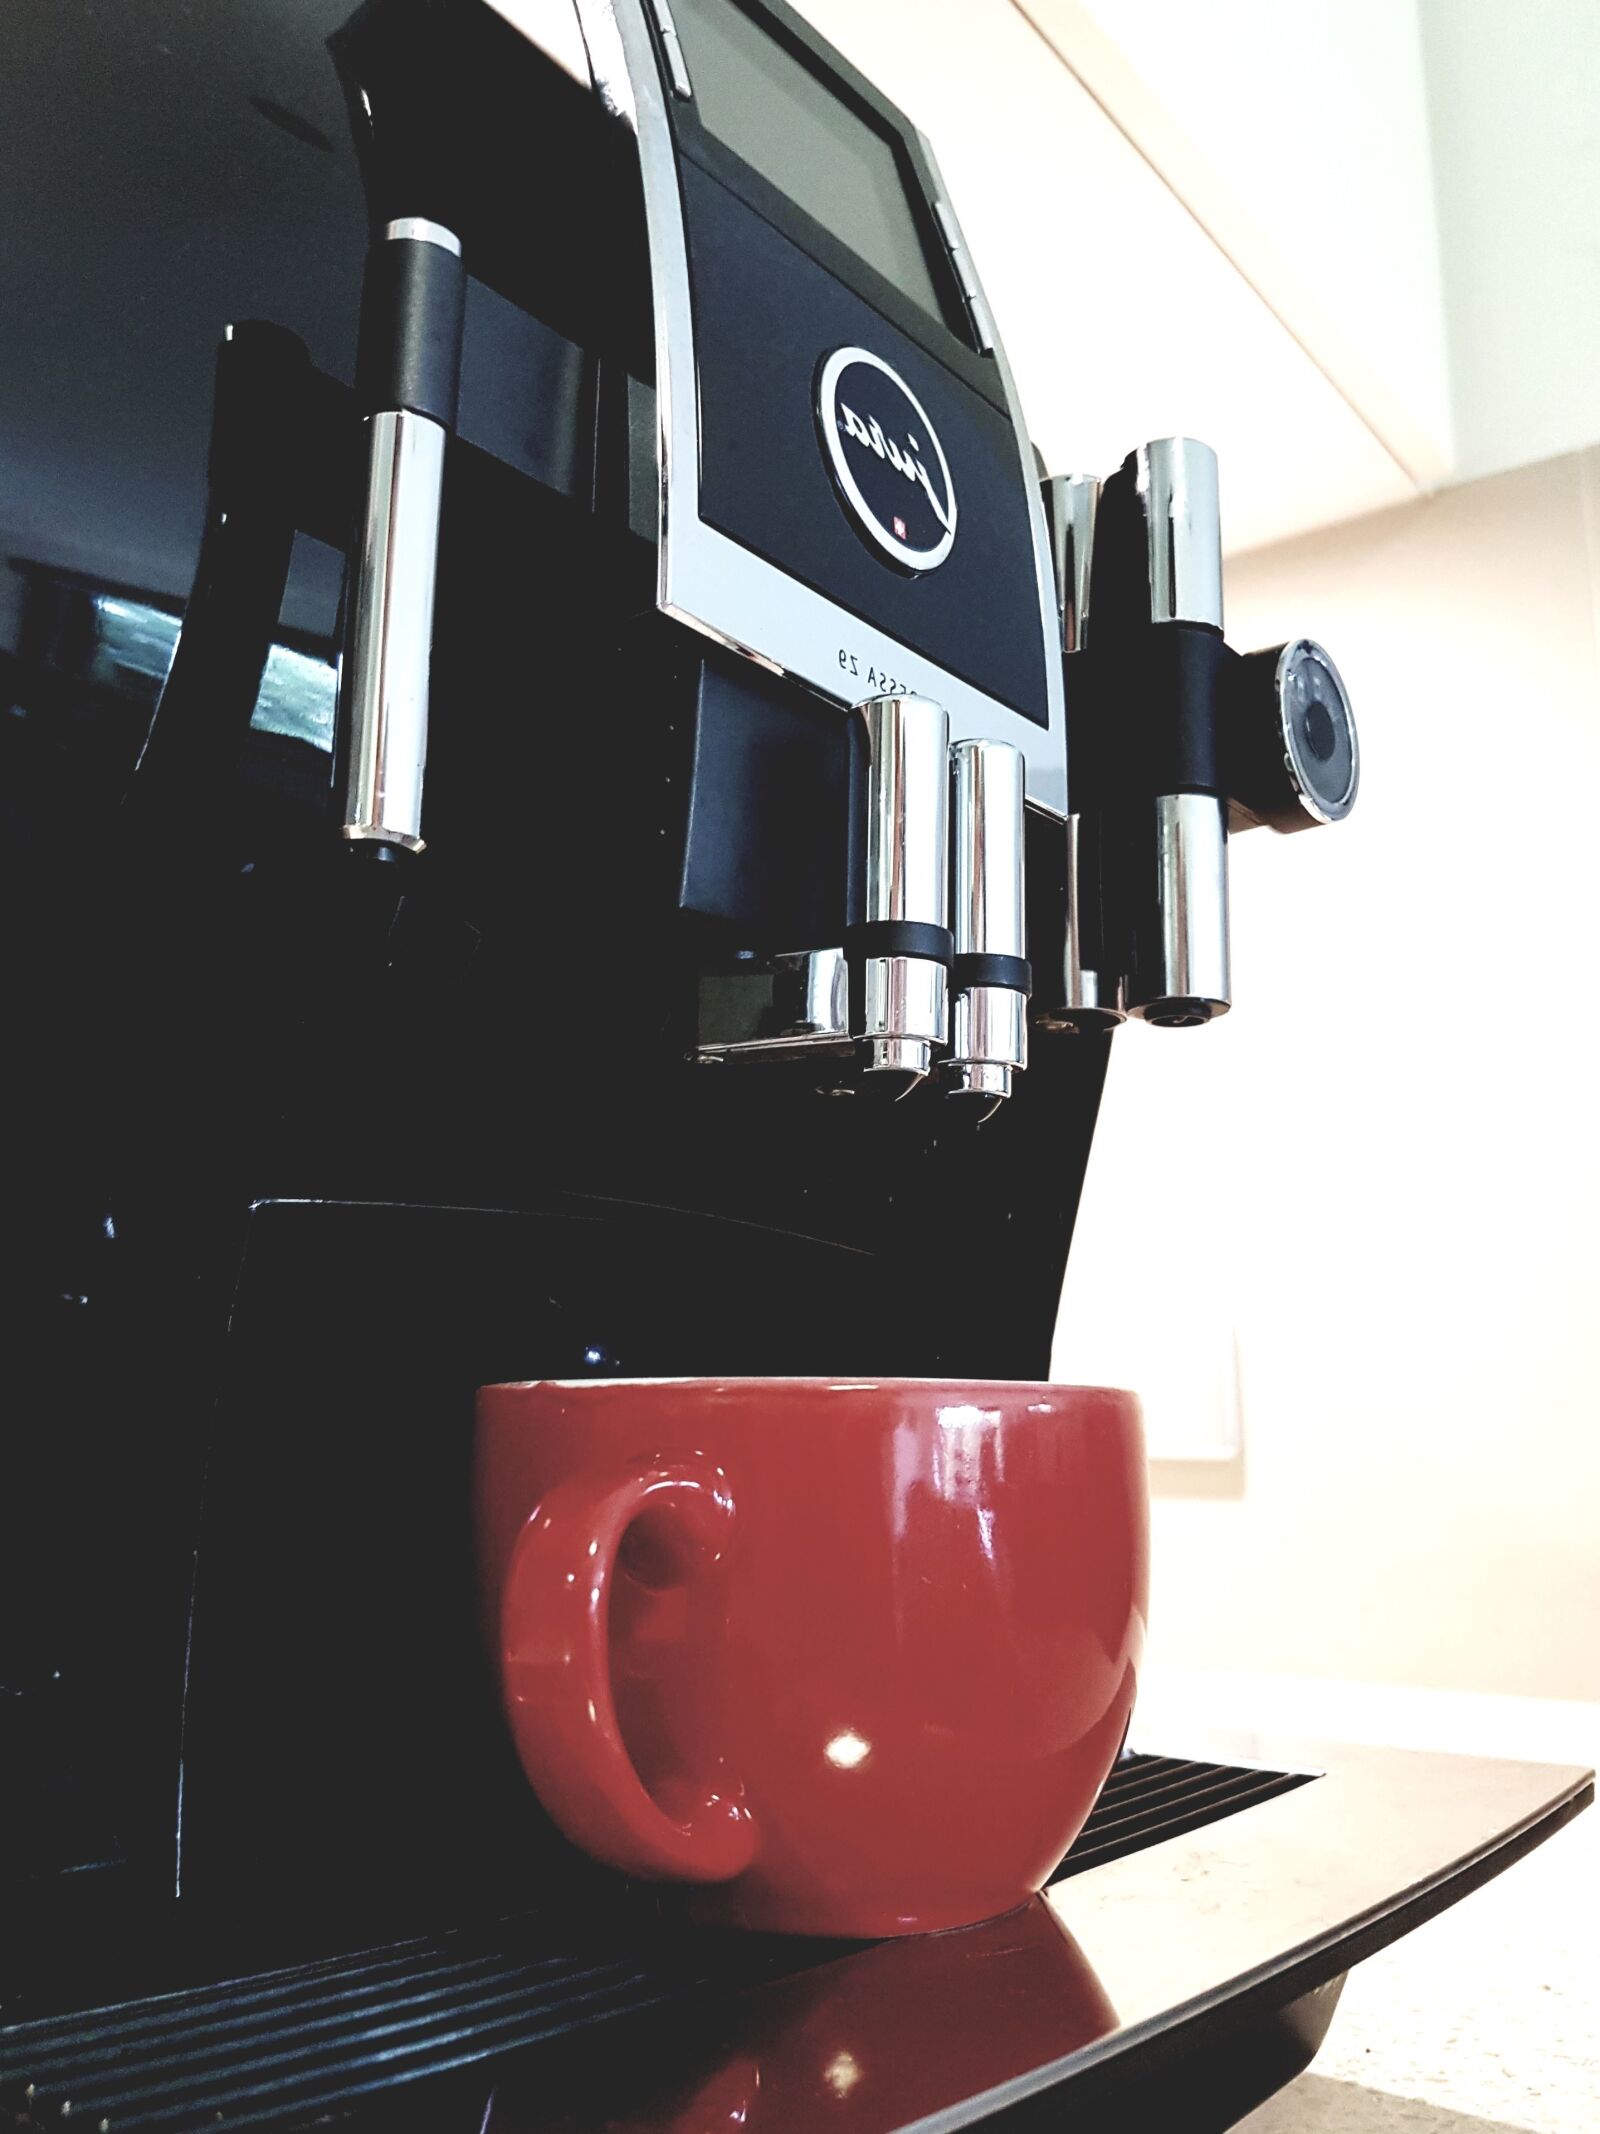 Samsung Galaxy S7 sample photo. Coffee machine, coffee cup photography